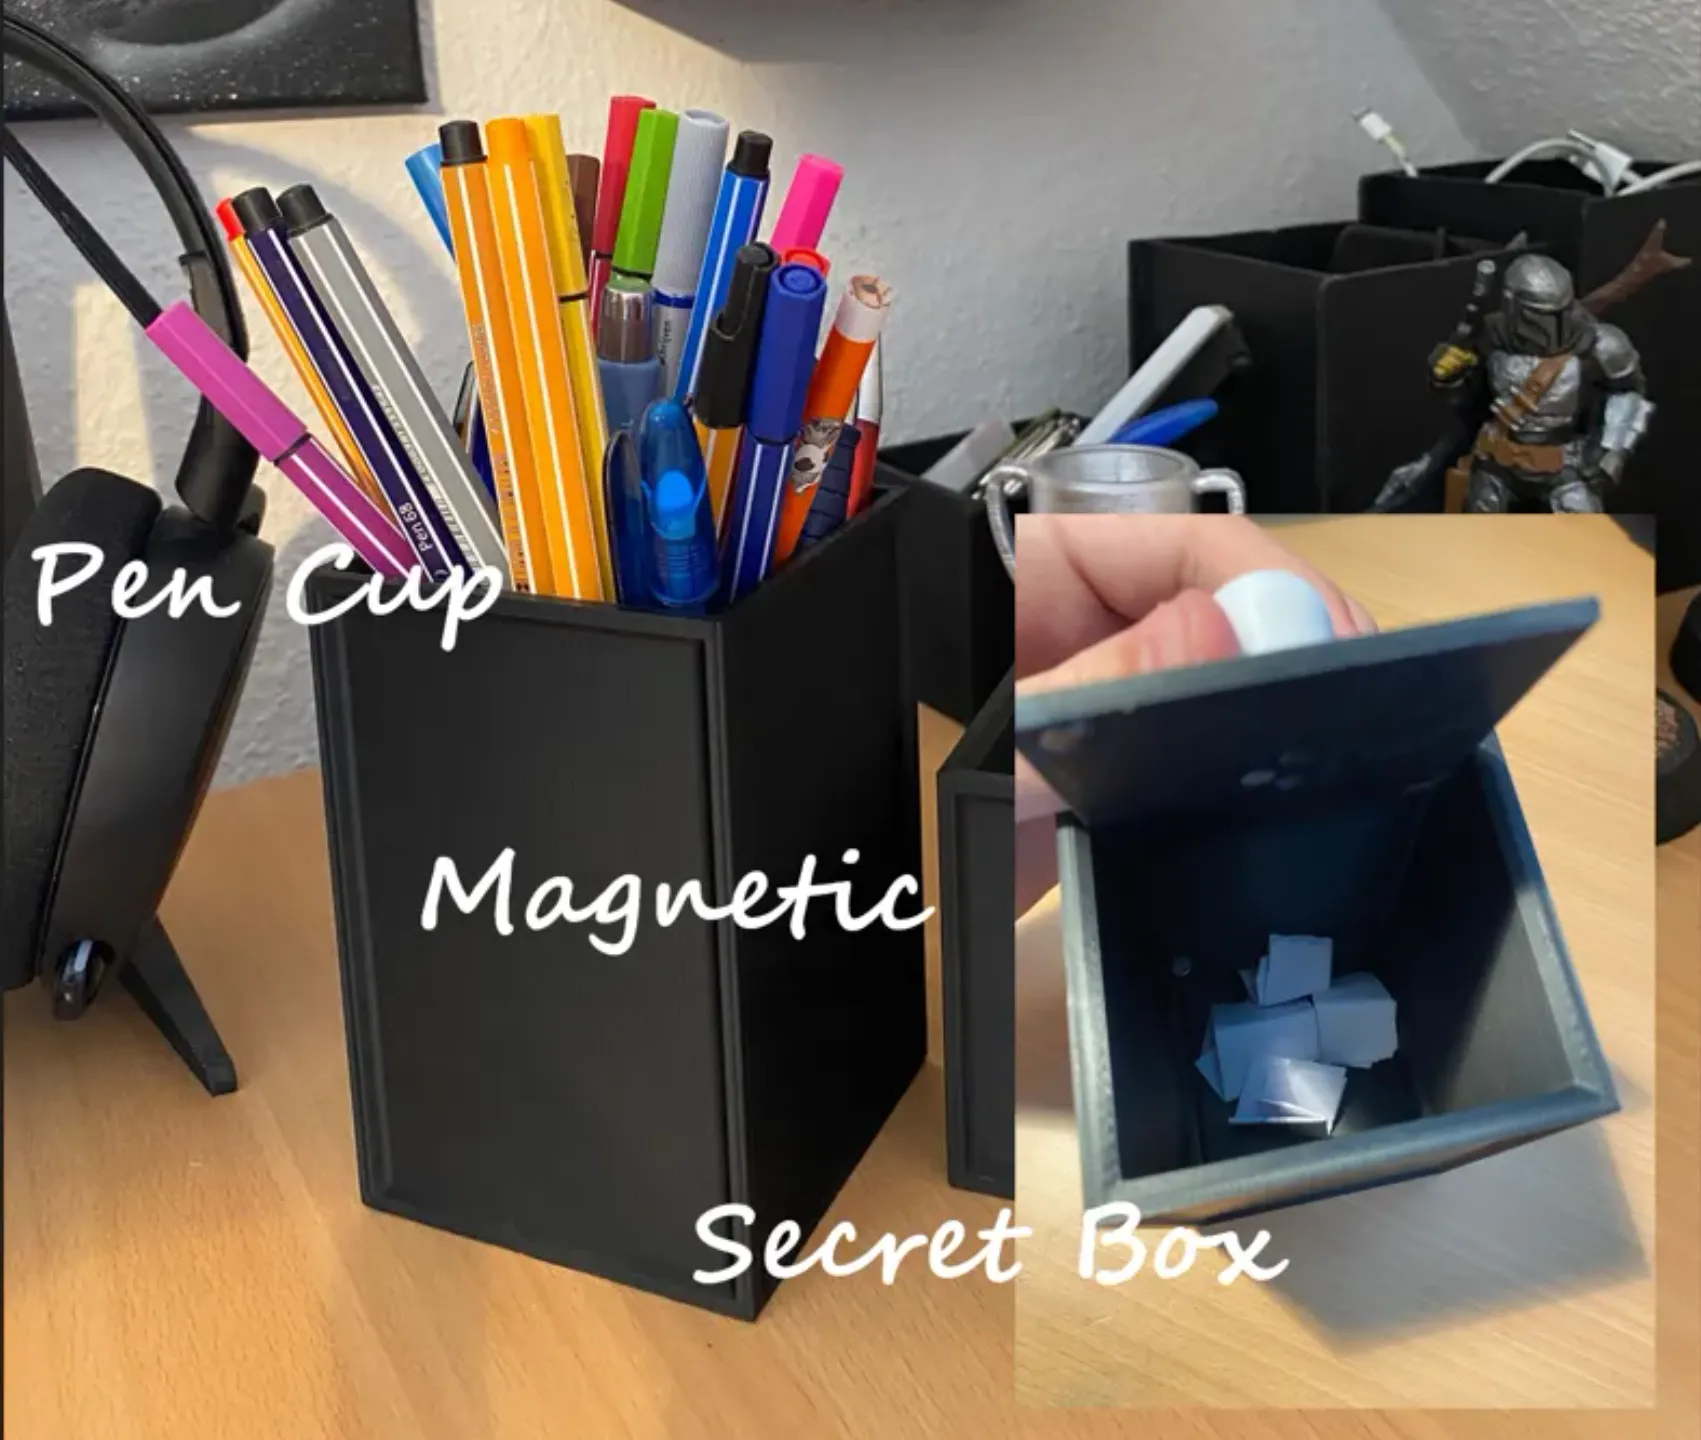 Pen Cup with Magnetic Secret Case 